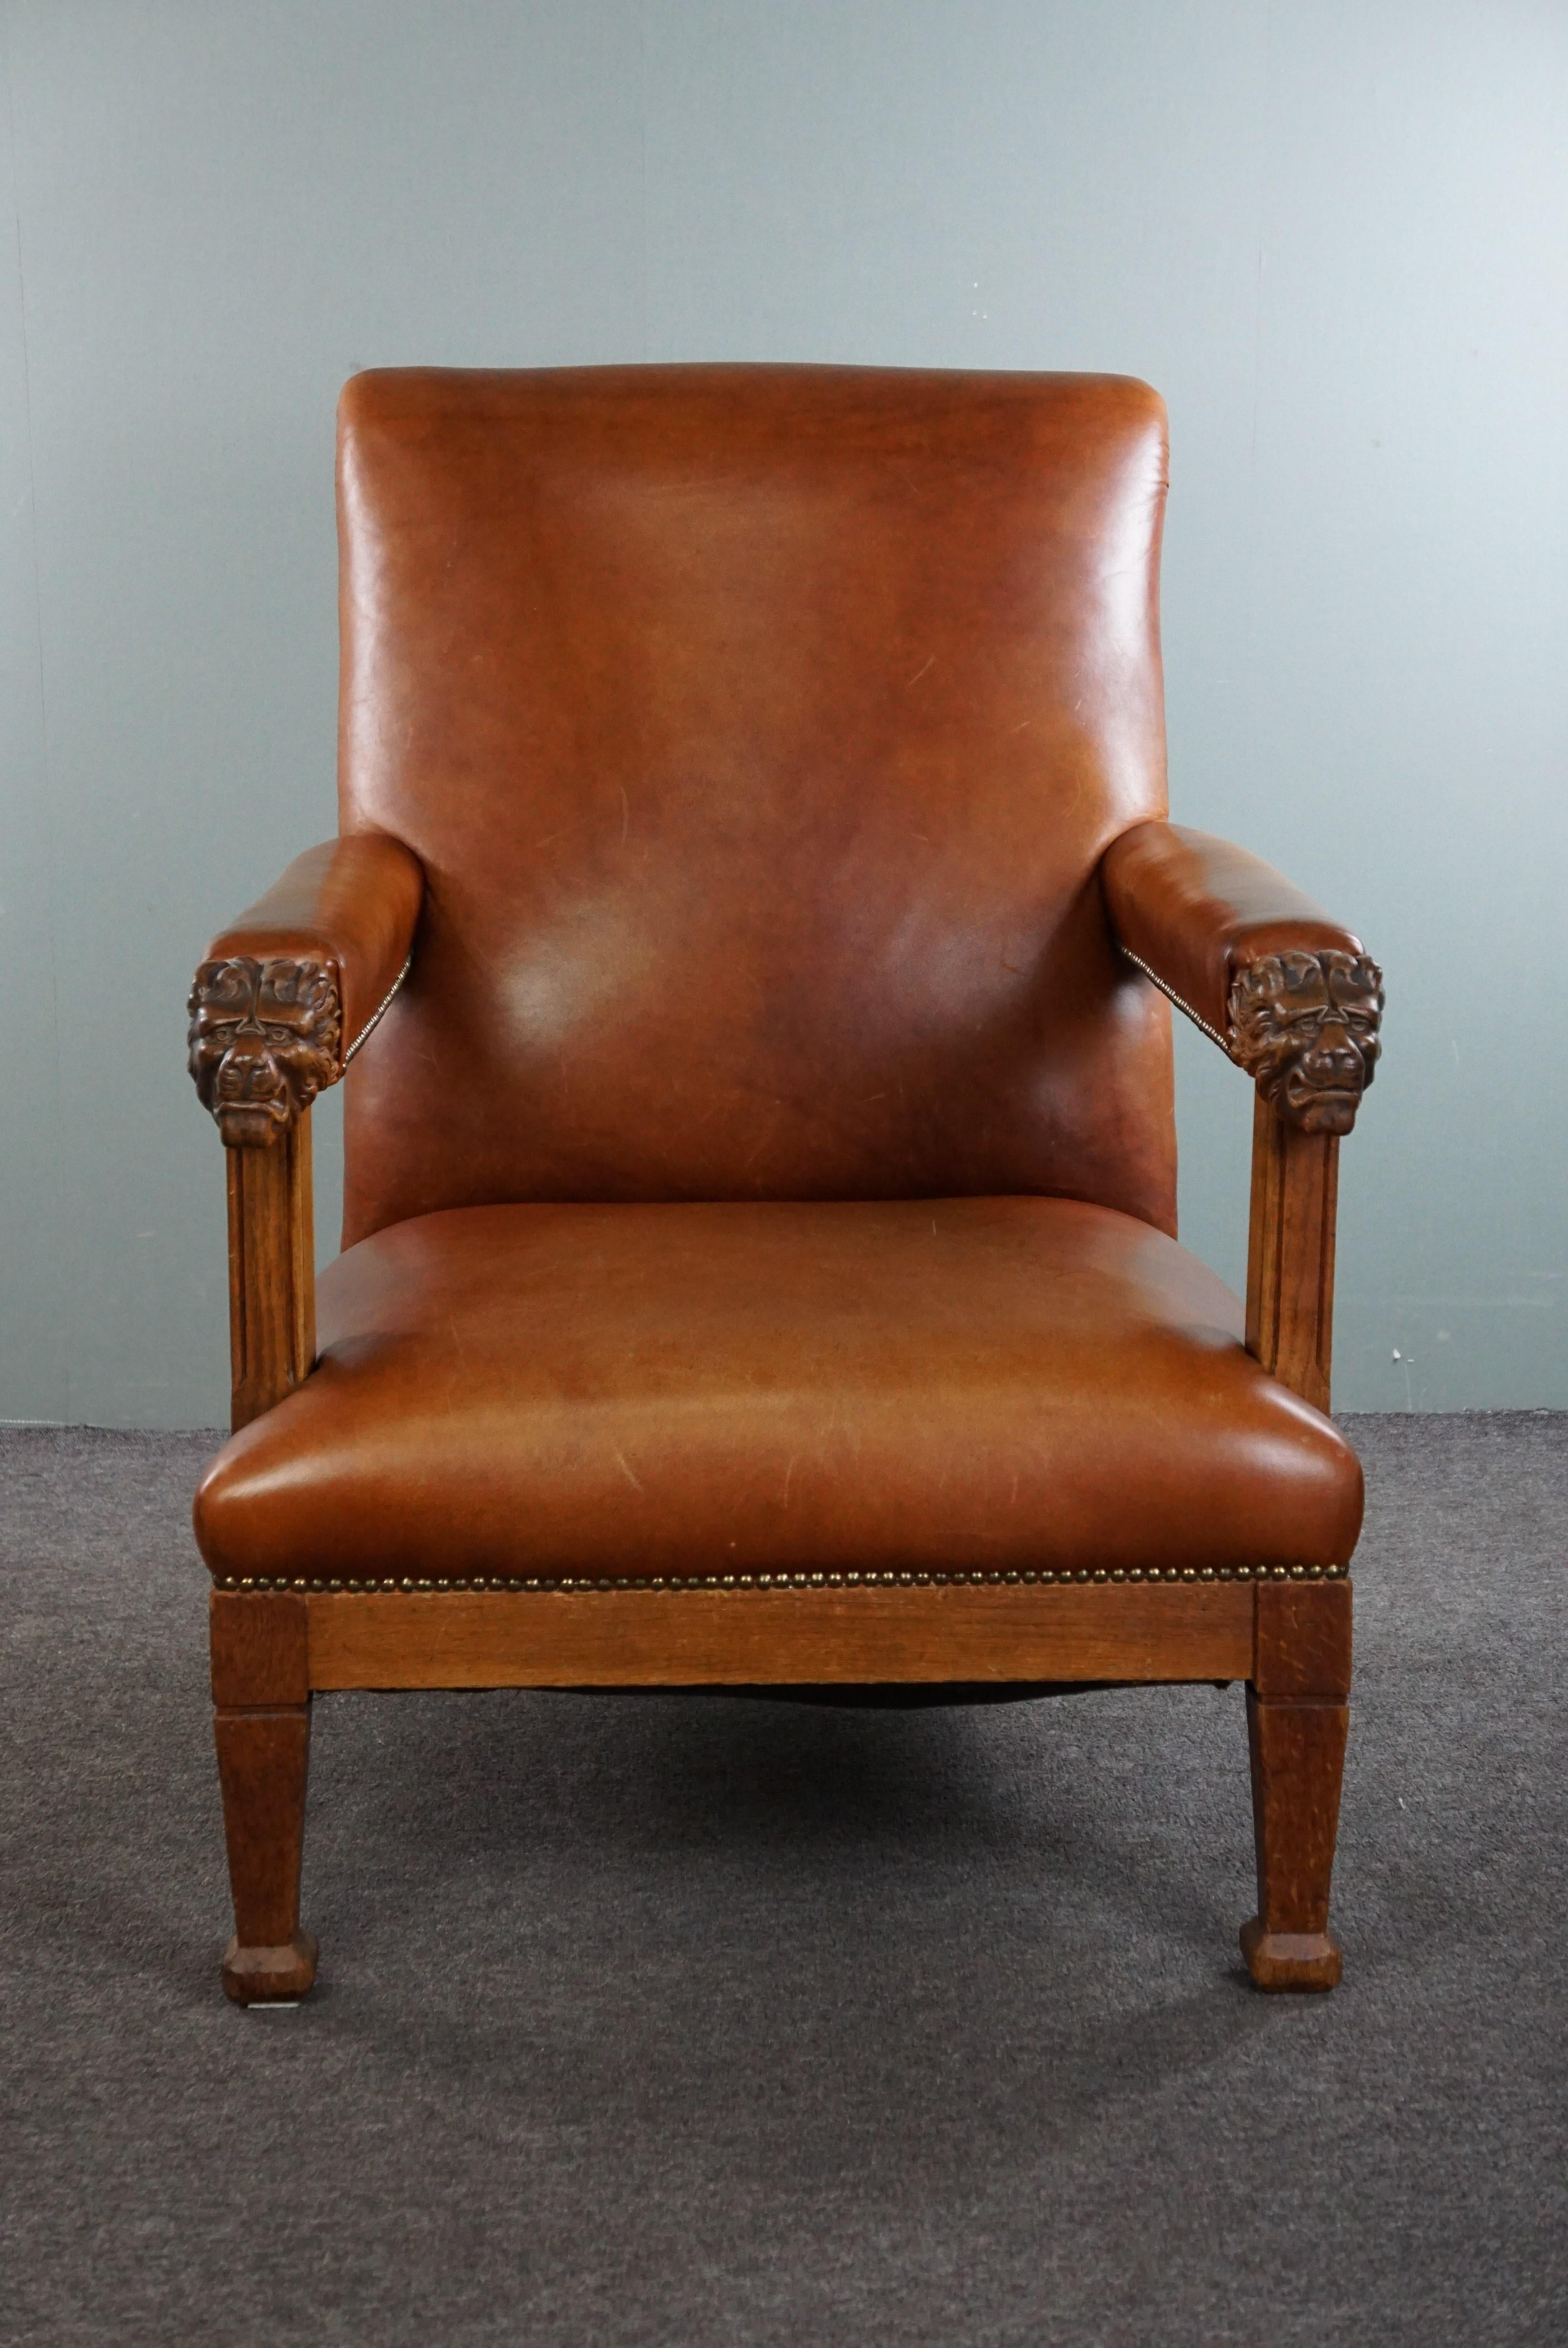 Ce fauteuil hollandais ancien et majestueux, orné de têtes de lion, a été retapissé en cuir de vache de couleur cognac et terminé par des clous décoratifs.

Vous imaginez déjà ce fauteuil dans votre intérieur ? Nous ne serions pas surpris qu'il se